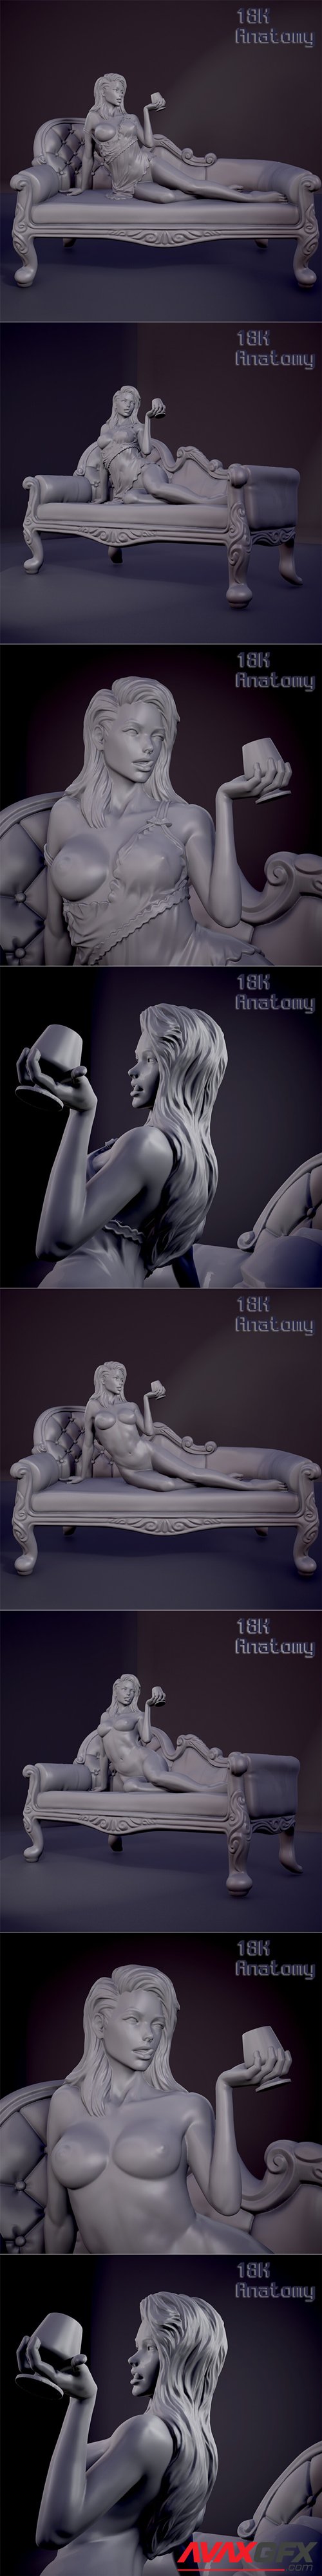 18K Anatomy - Girl on the sofa – 3D Printable STL